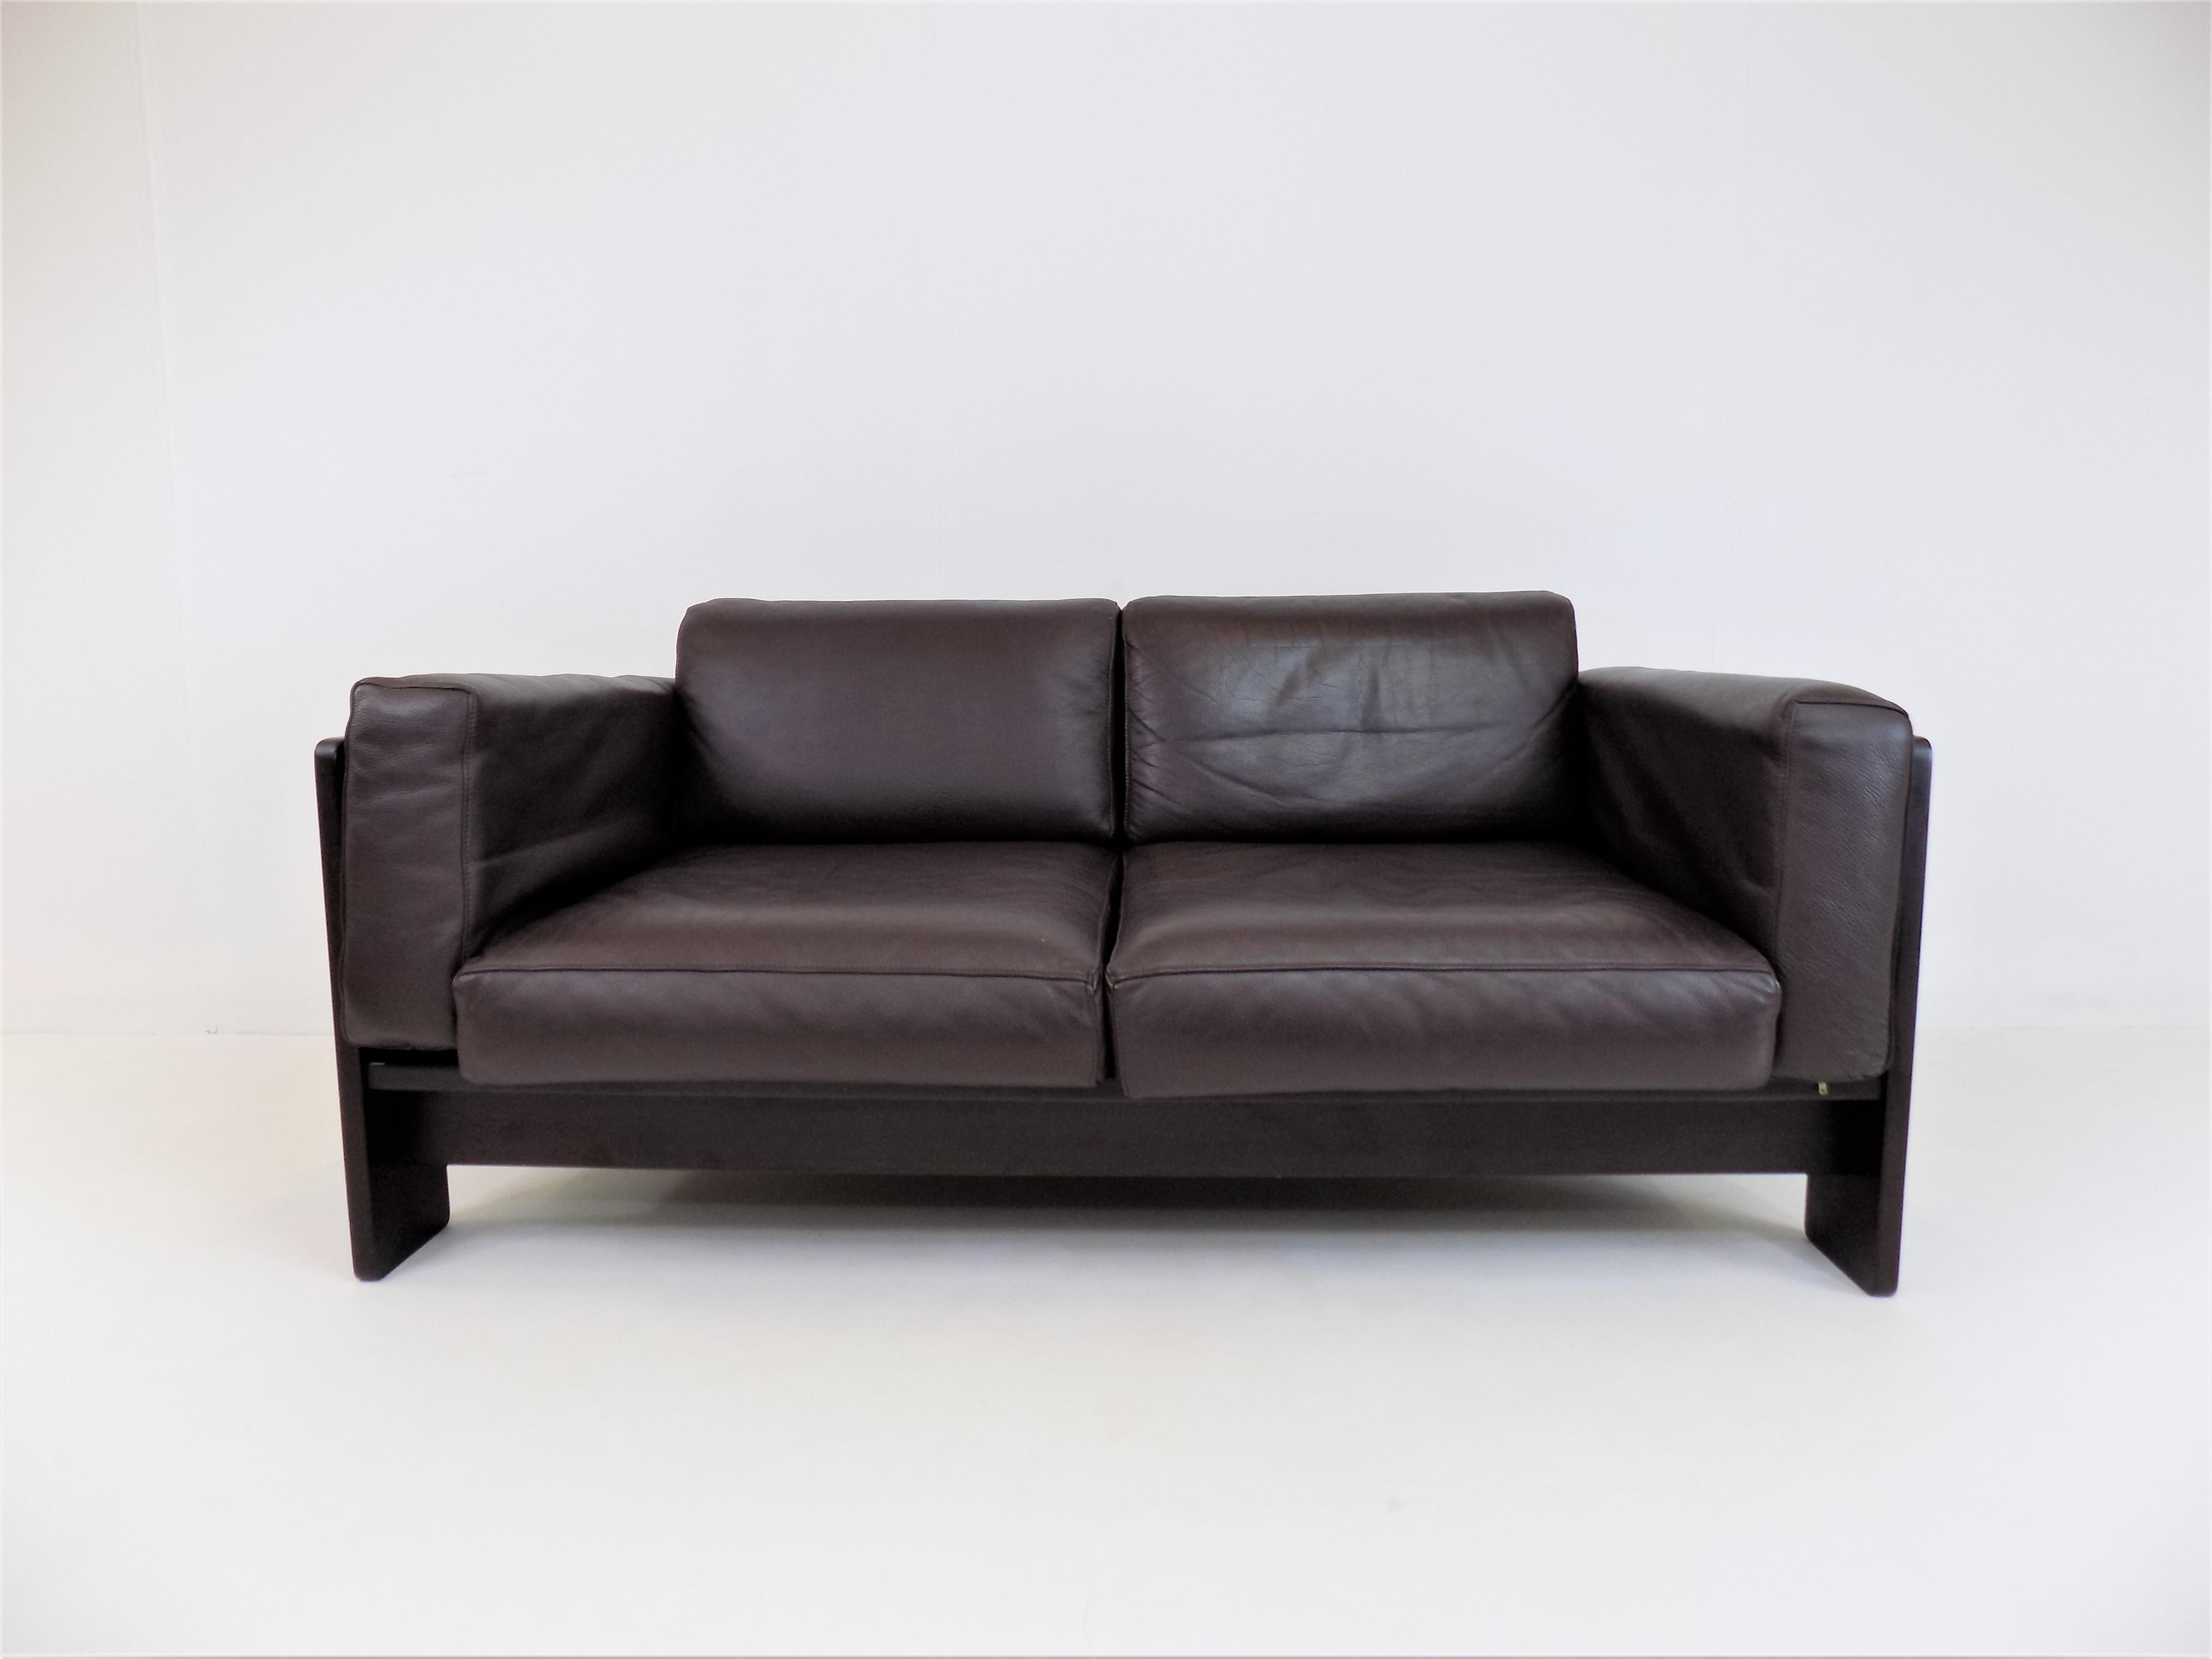 Dieses Zweisitzer-Sofa aus dunkelbraunem Holz und braunem Leder ist in ausgezeichnetem Zustand. Der fast schwarze Holzrahmen harmoniert sehr schön mit dem etwas helleren Braunton des Leders. Das weiche Leder ist in fast neuem Zustand, der Holzrahmen